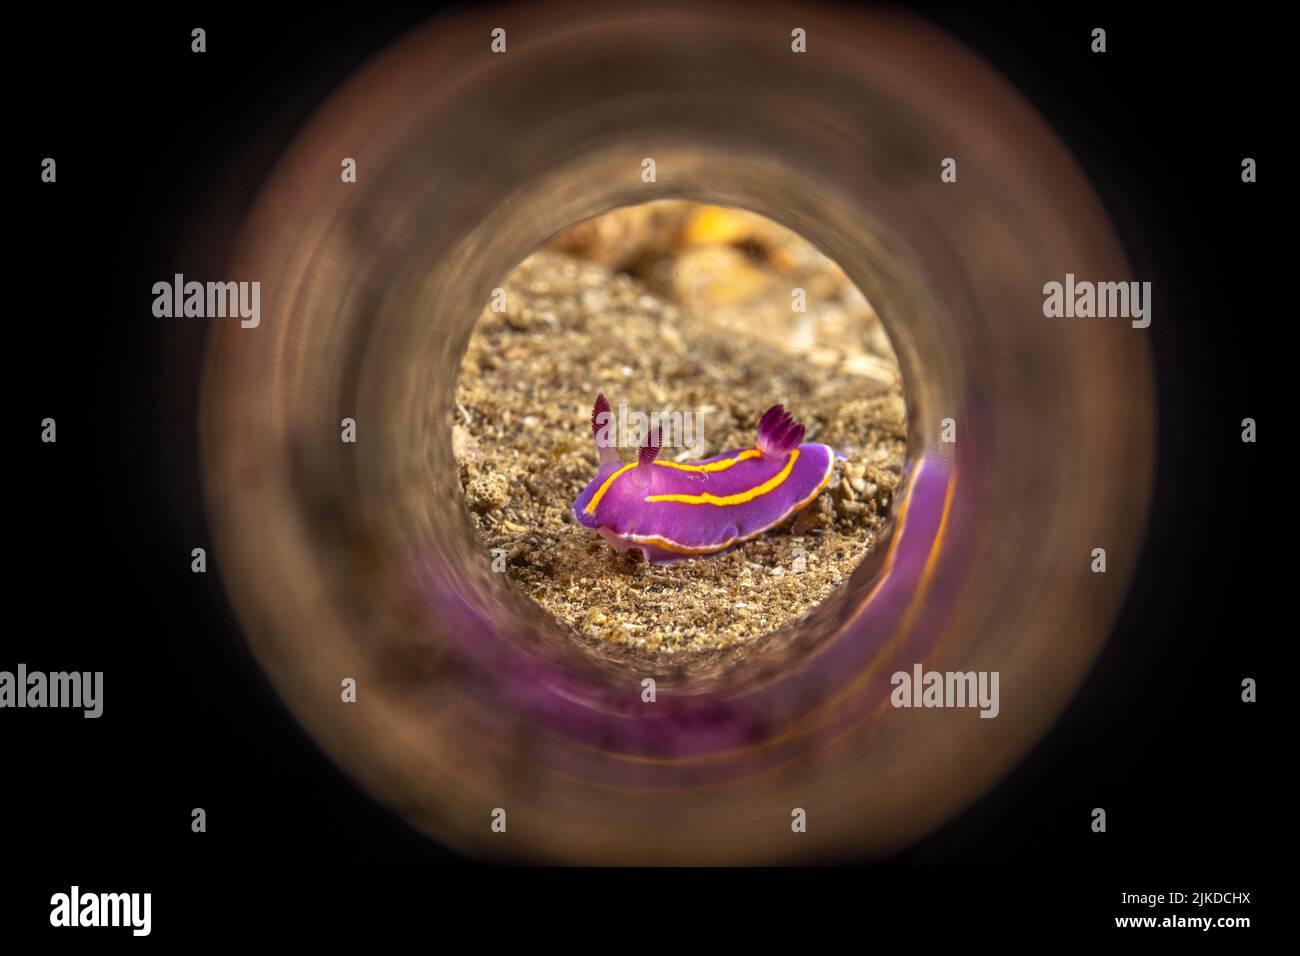 Ein kleiner MacFarland Aeolid-Nudibranch, der über einen sandigen Boden kriecht. Durch einen reflektierenden Zauberschlauch geschossen. Stockfoto